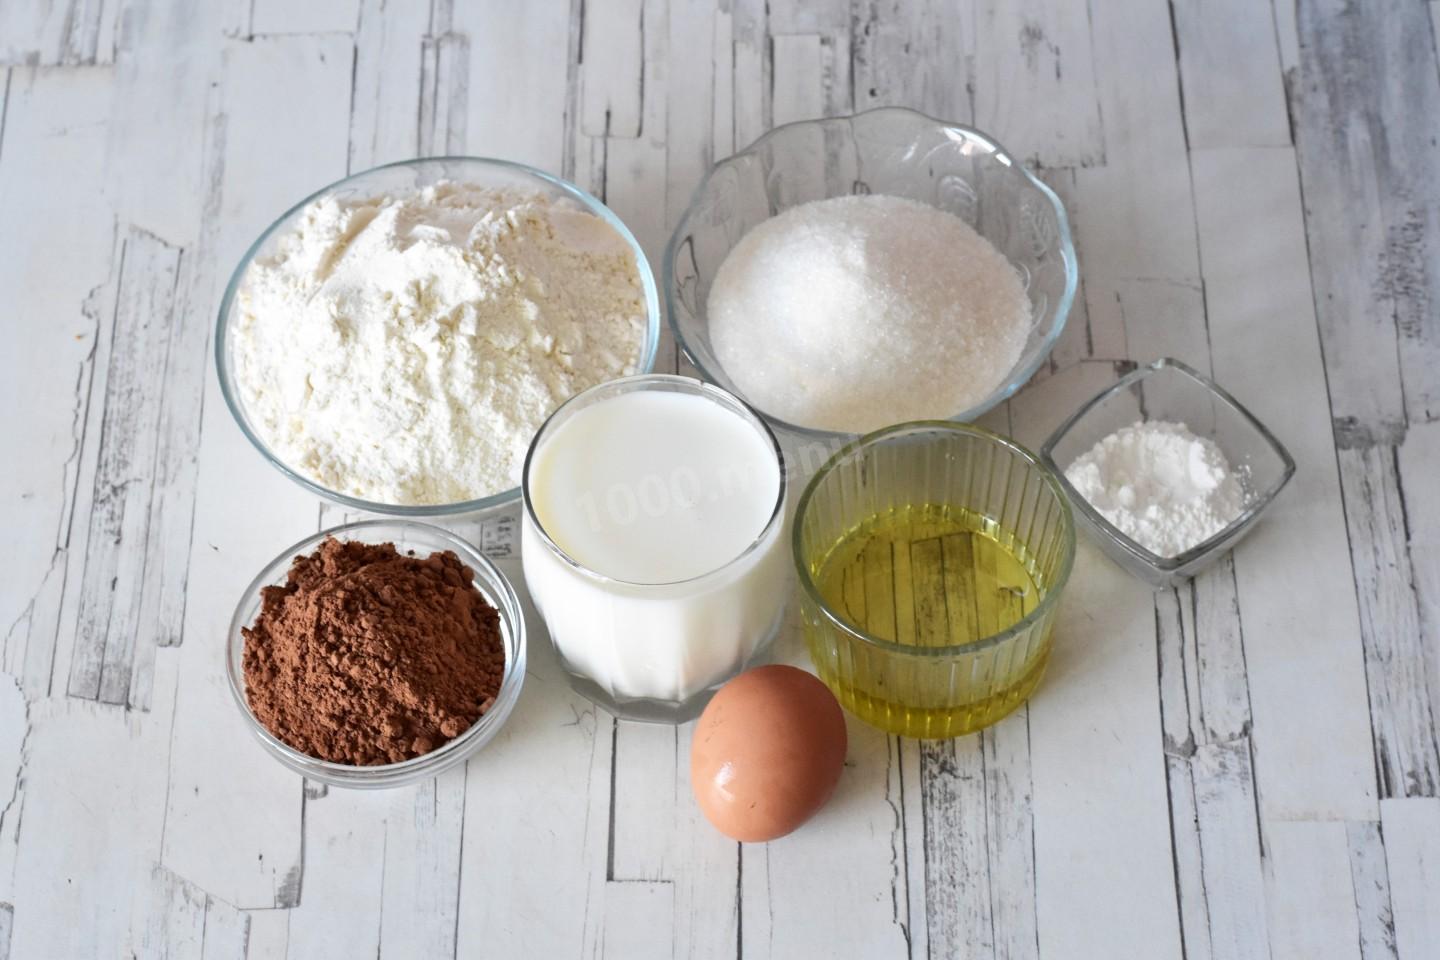 Кефир яйцо сахар мука сода. Пряники домашние рецепты на молоке. Масленица мука молоко яйца масло. Как делать тесто на пряники на молоке. Что можно приготовить из муки первого сорта.